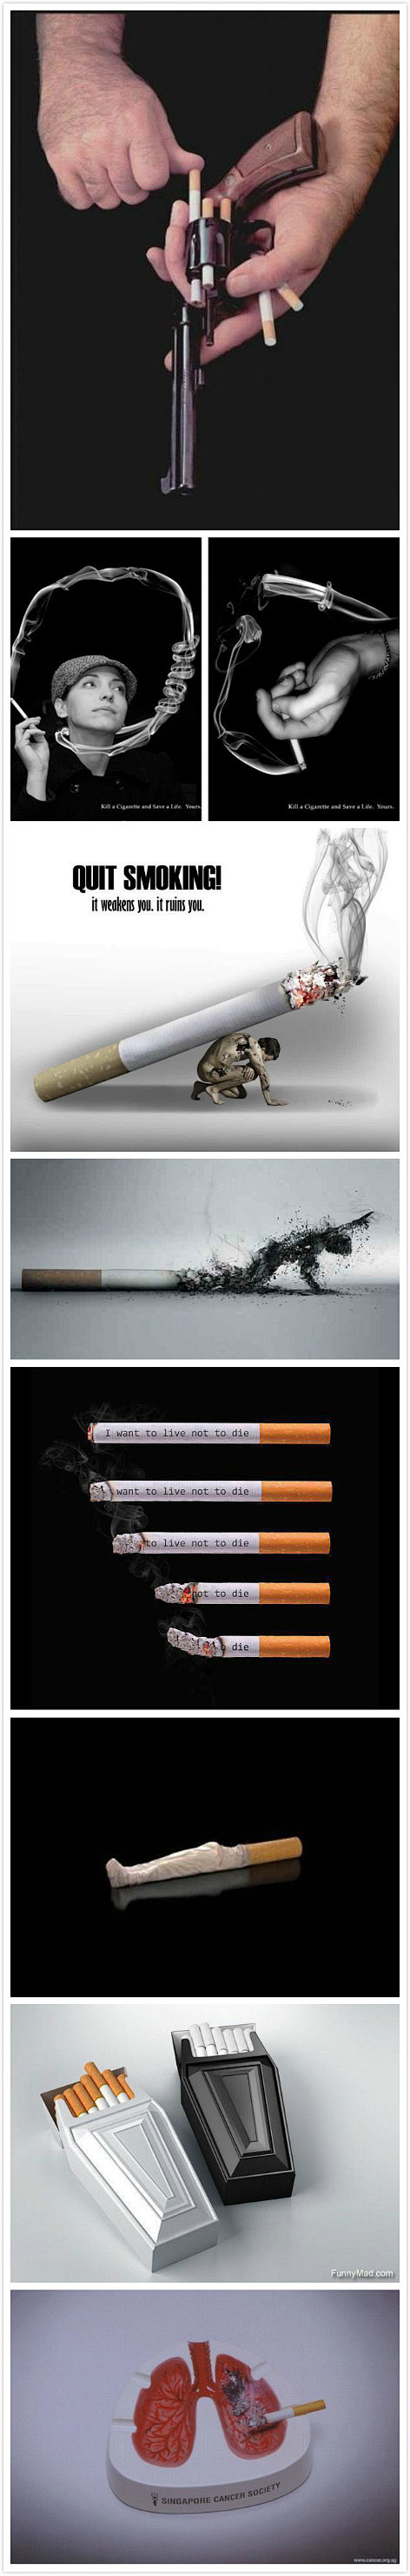 吸烟有害健康~

中国文化创意产业整合专...